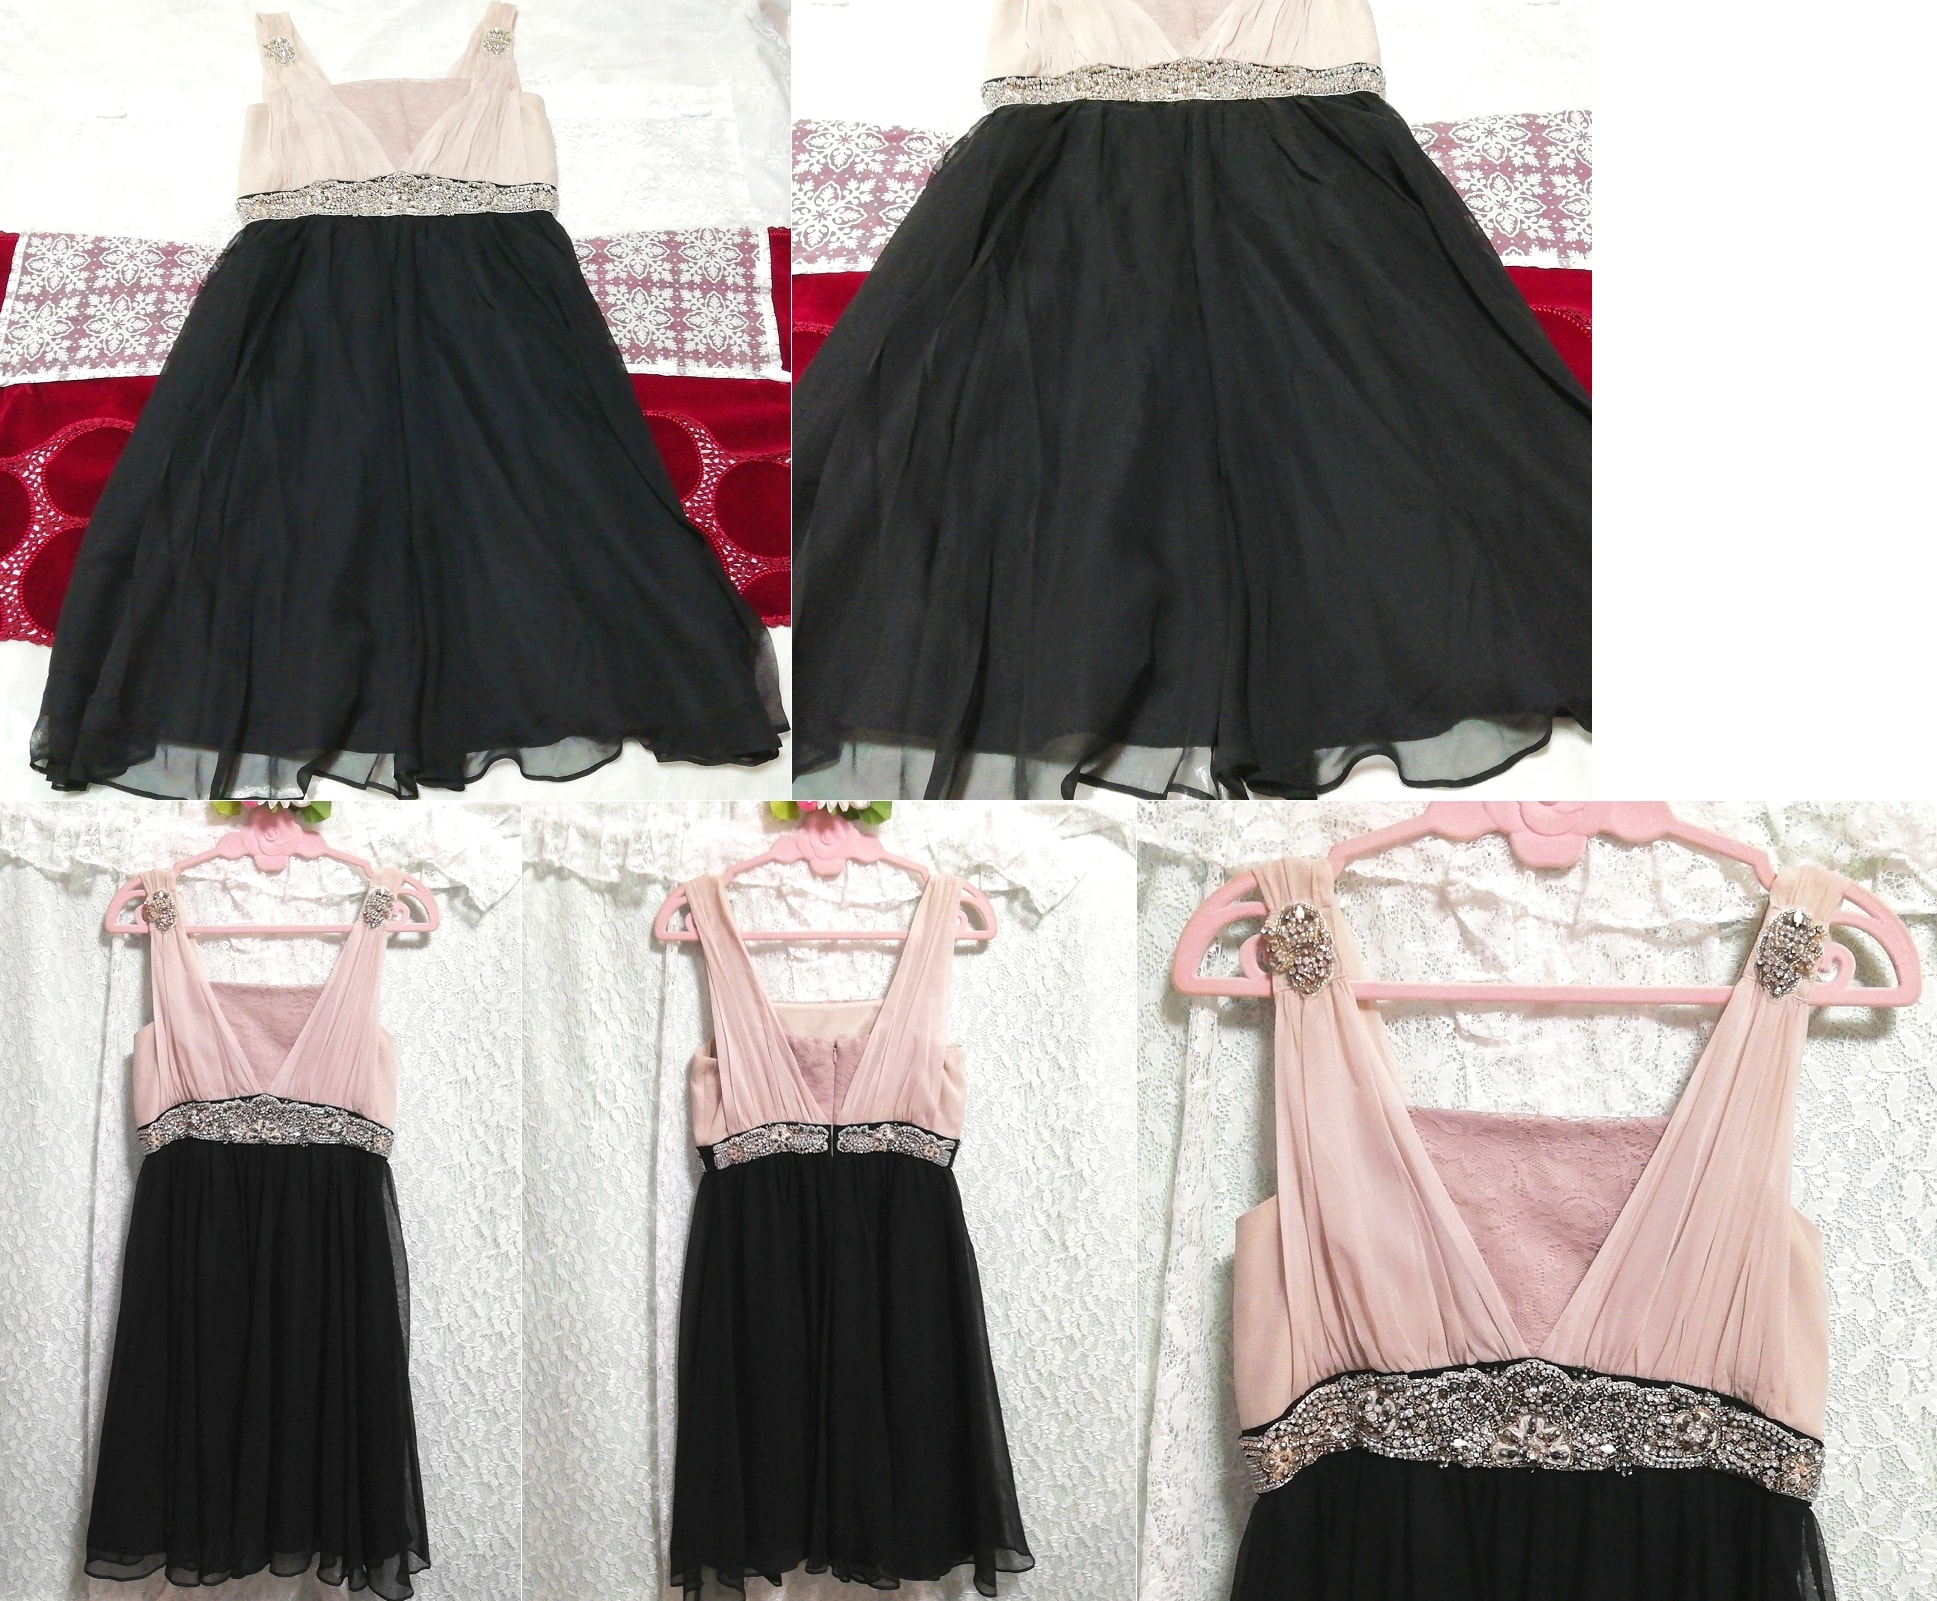 핑크 쉬폰 주얼리 블랙 스커트 럭셔리 실크 네글리제 잠옷 드레스, 패션, 숙녀 패션, 잠옷, 잠옷